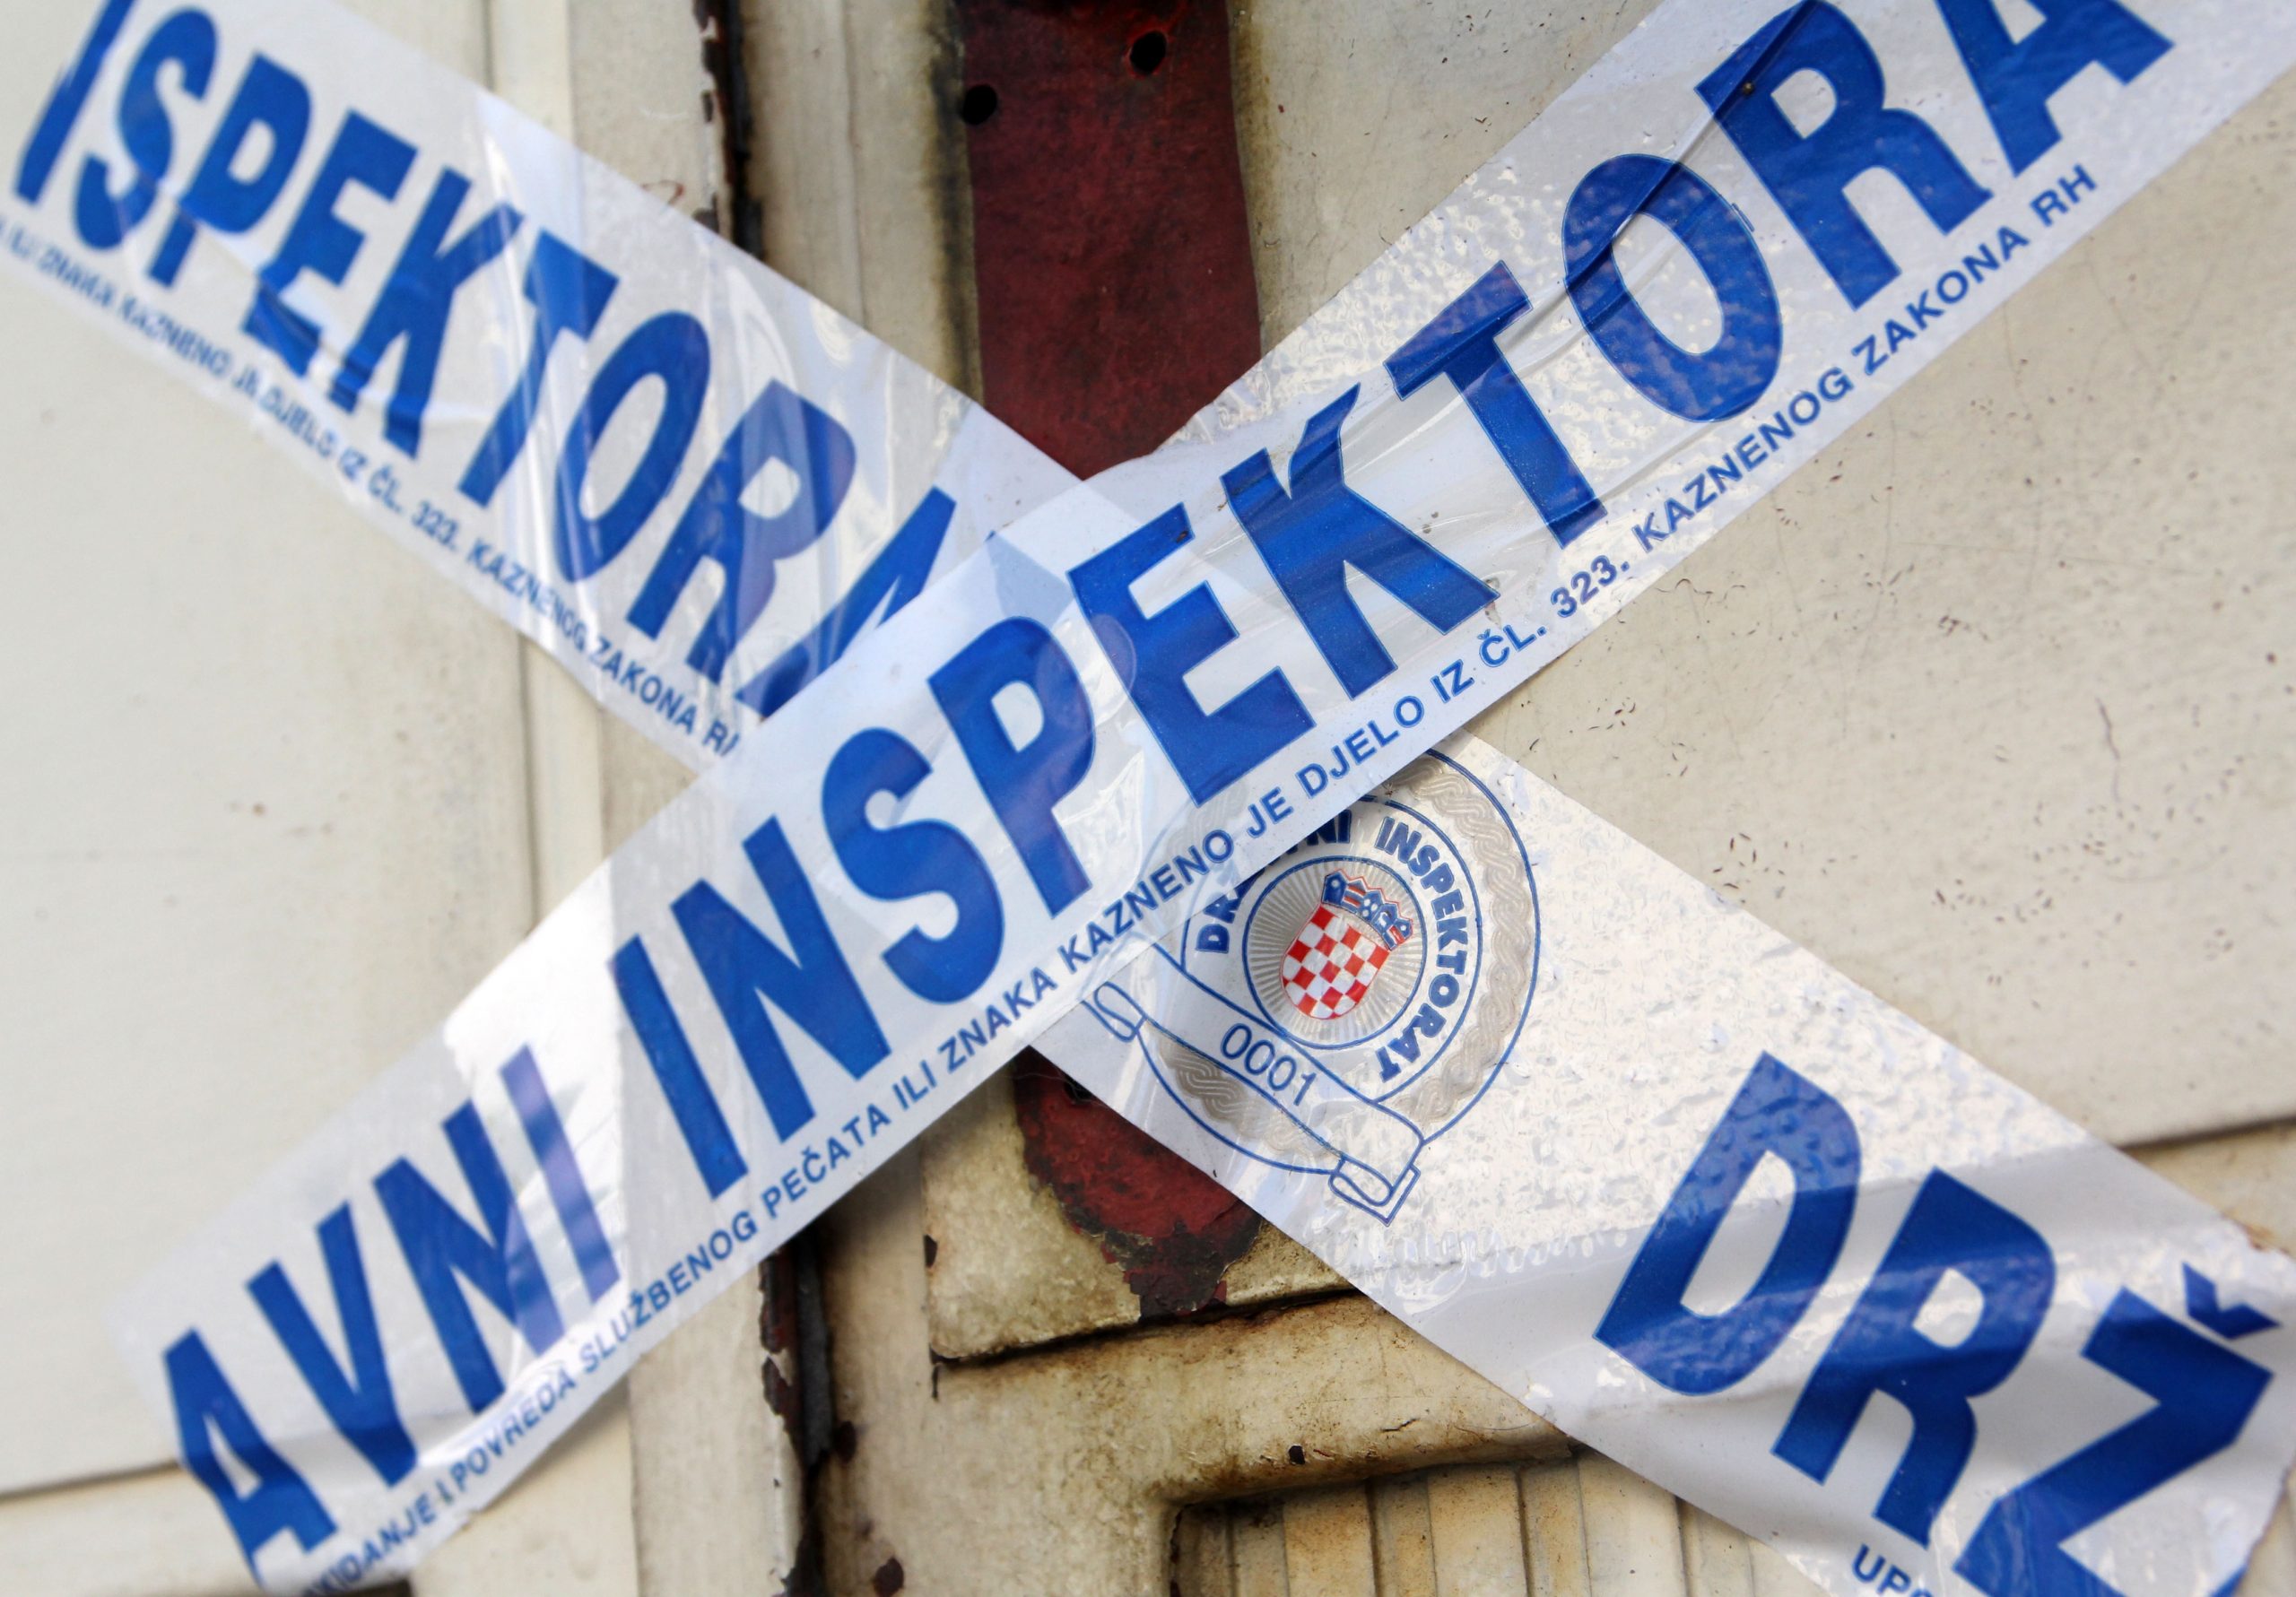 26.07.2013., Sibenik - Drzavni inspektorat zatvorio i zapecatio ugostiteljski objekt u centru grada.
Photo: Dusko Jaramaz/PIXSELL